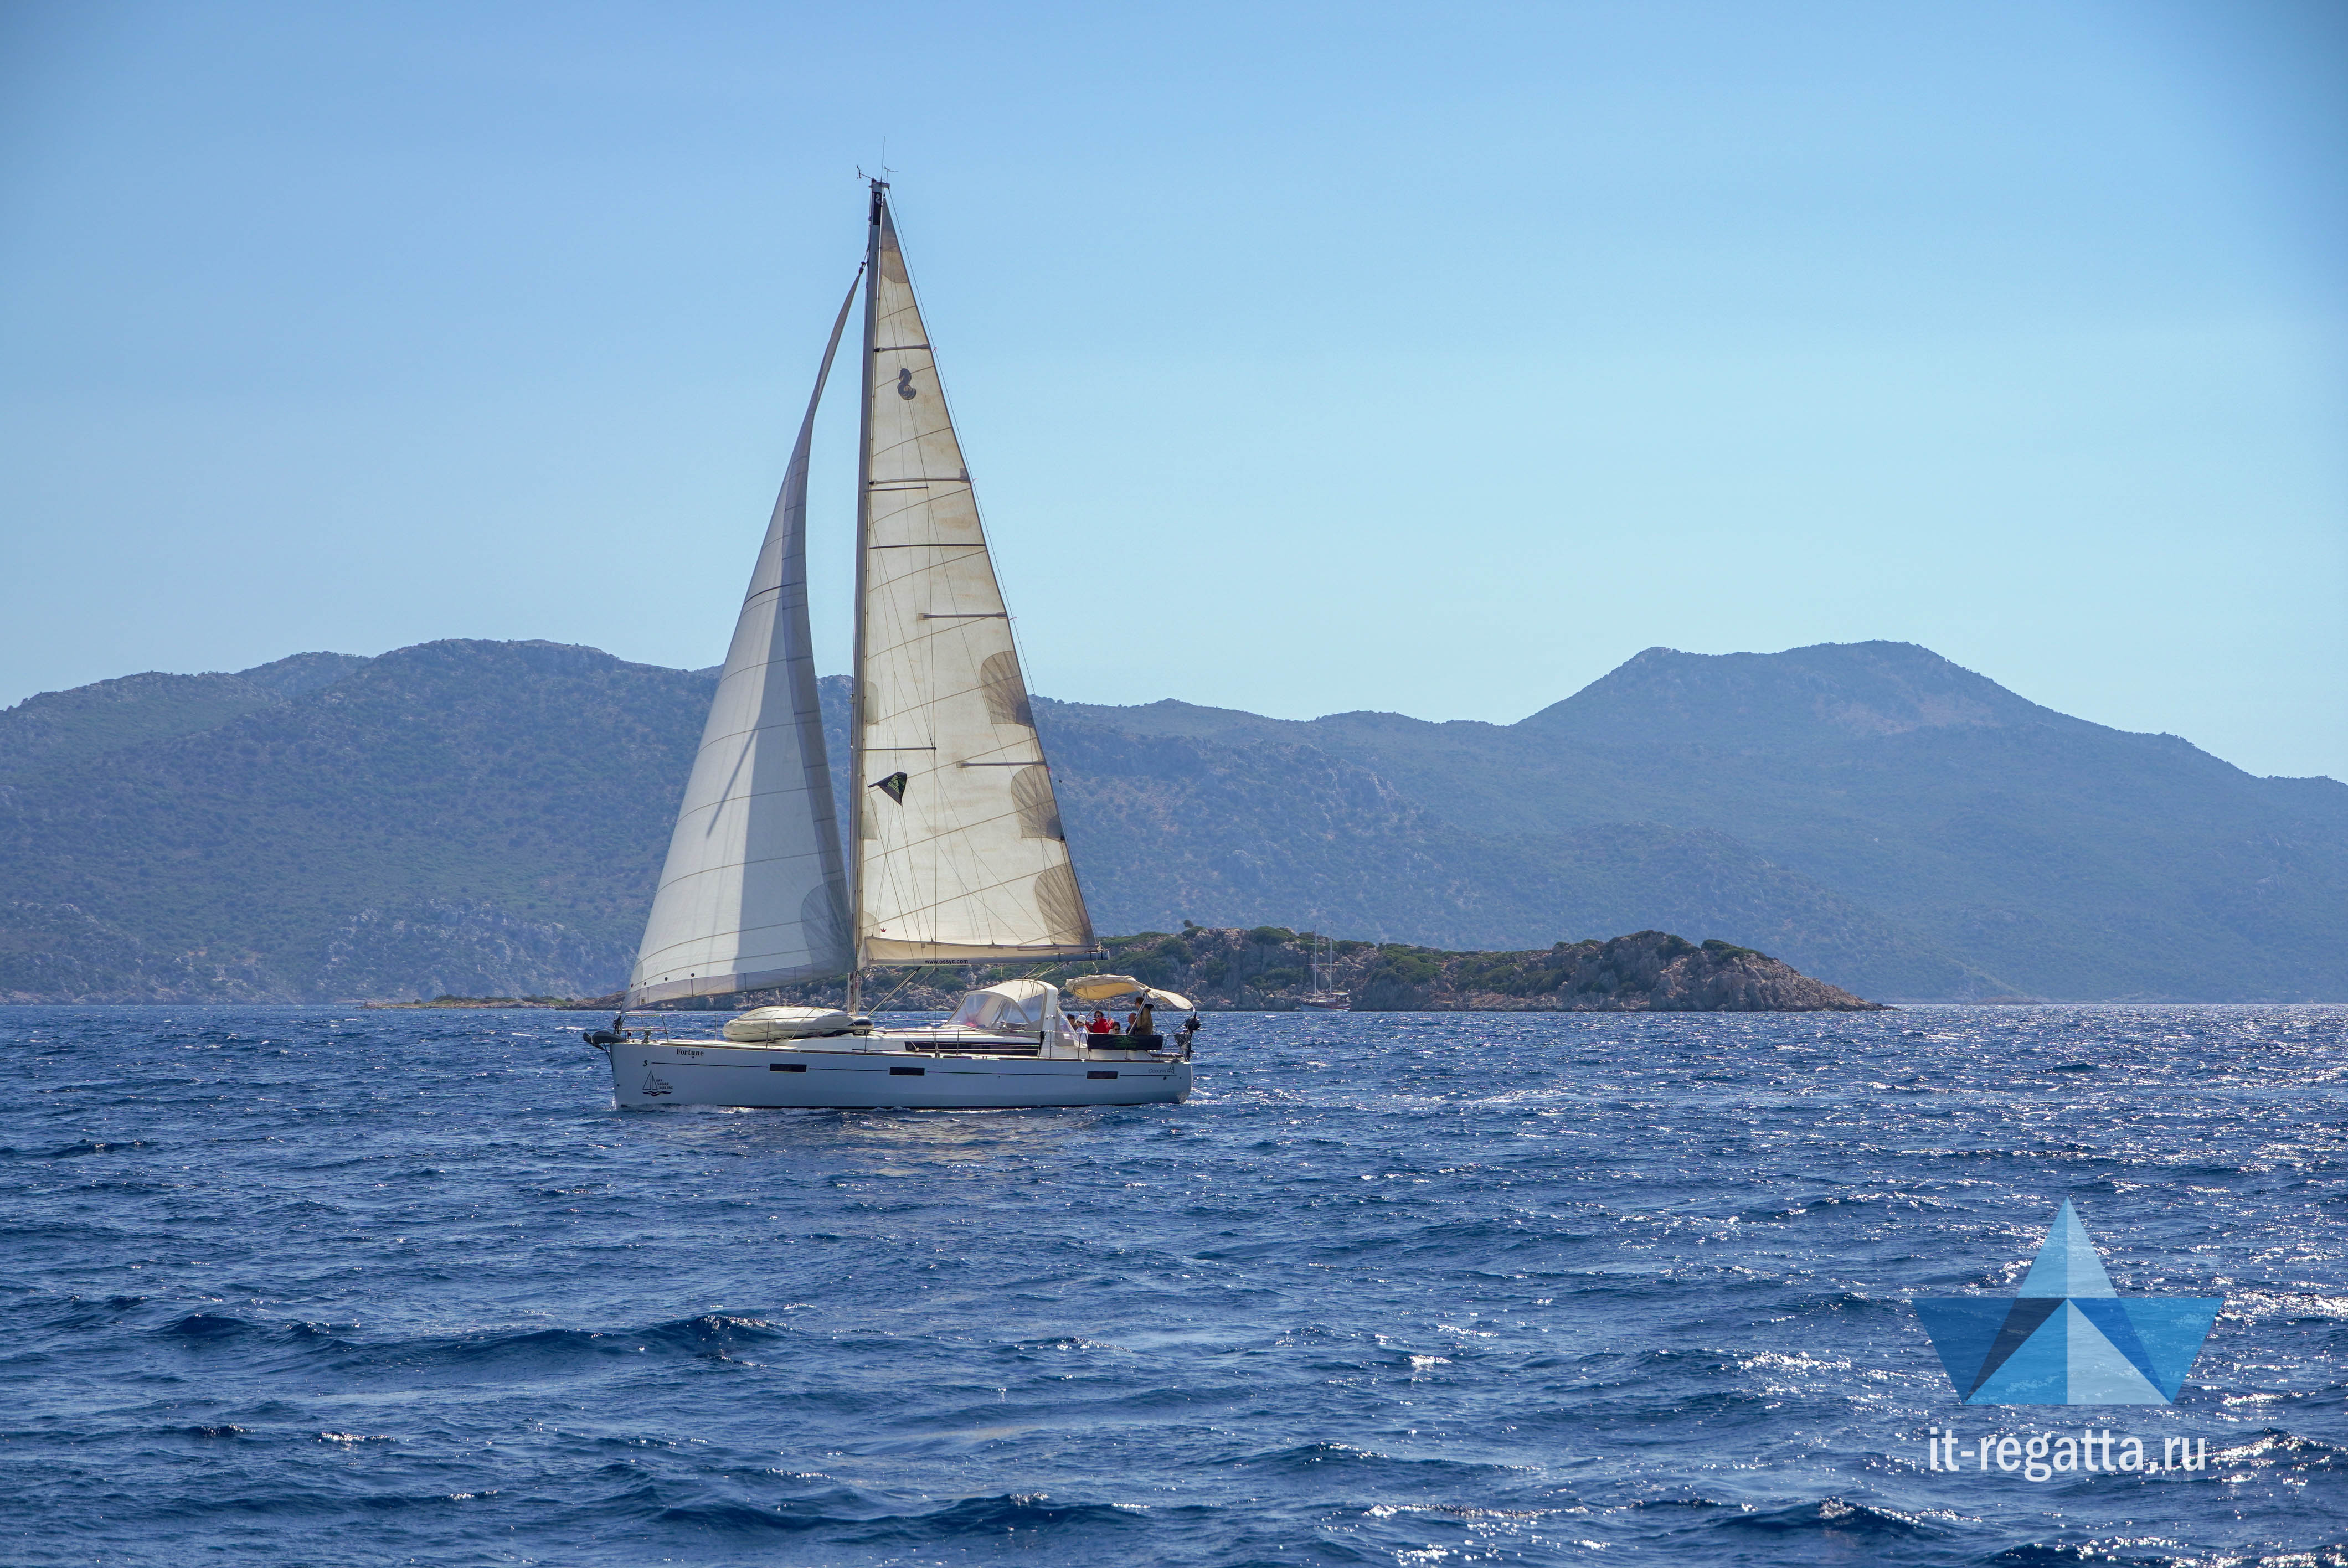 Отпуск мечты в Турции: зачем айтишнику на яхту?